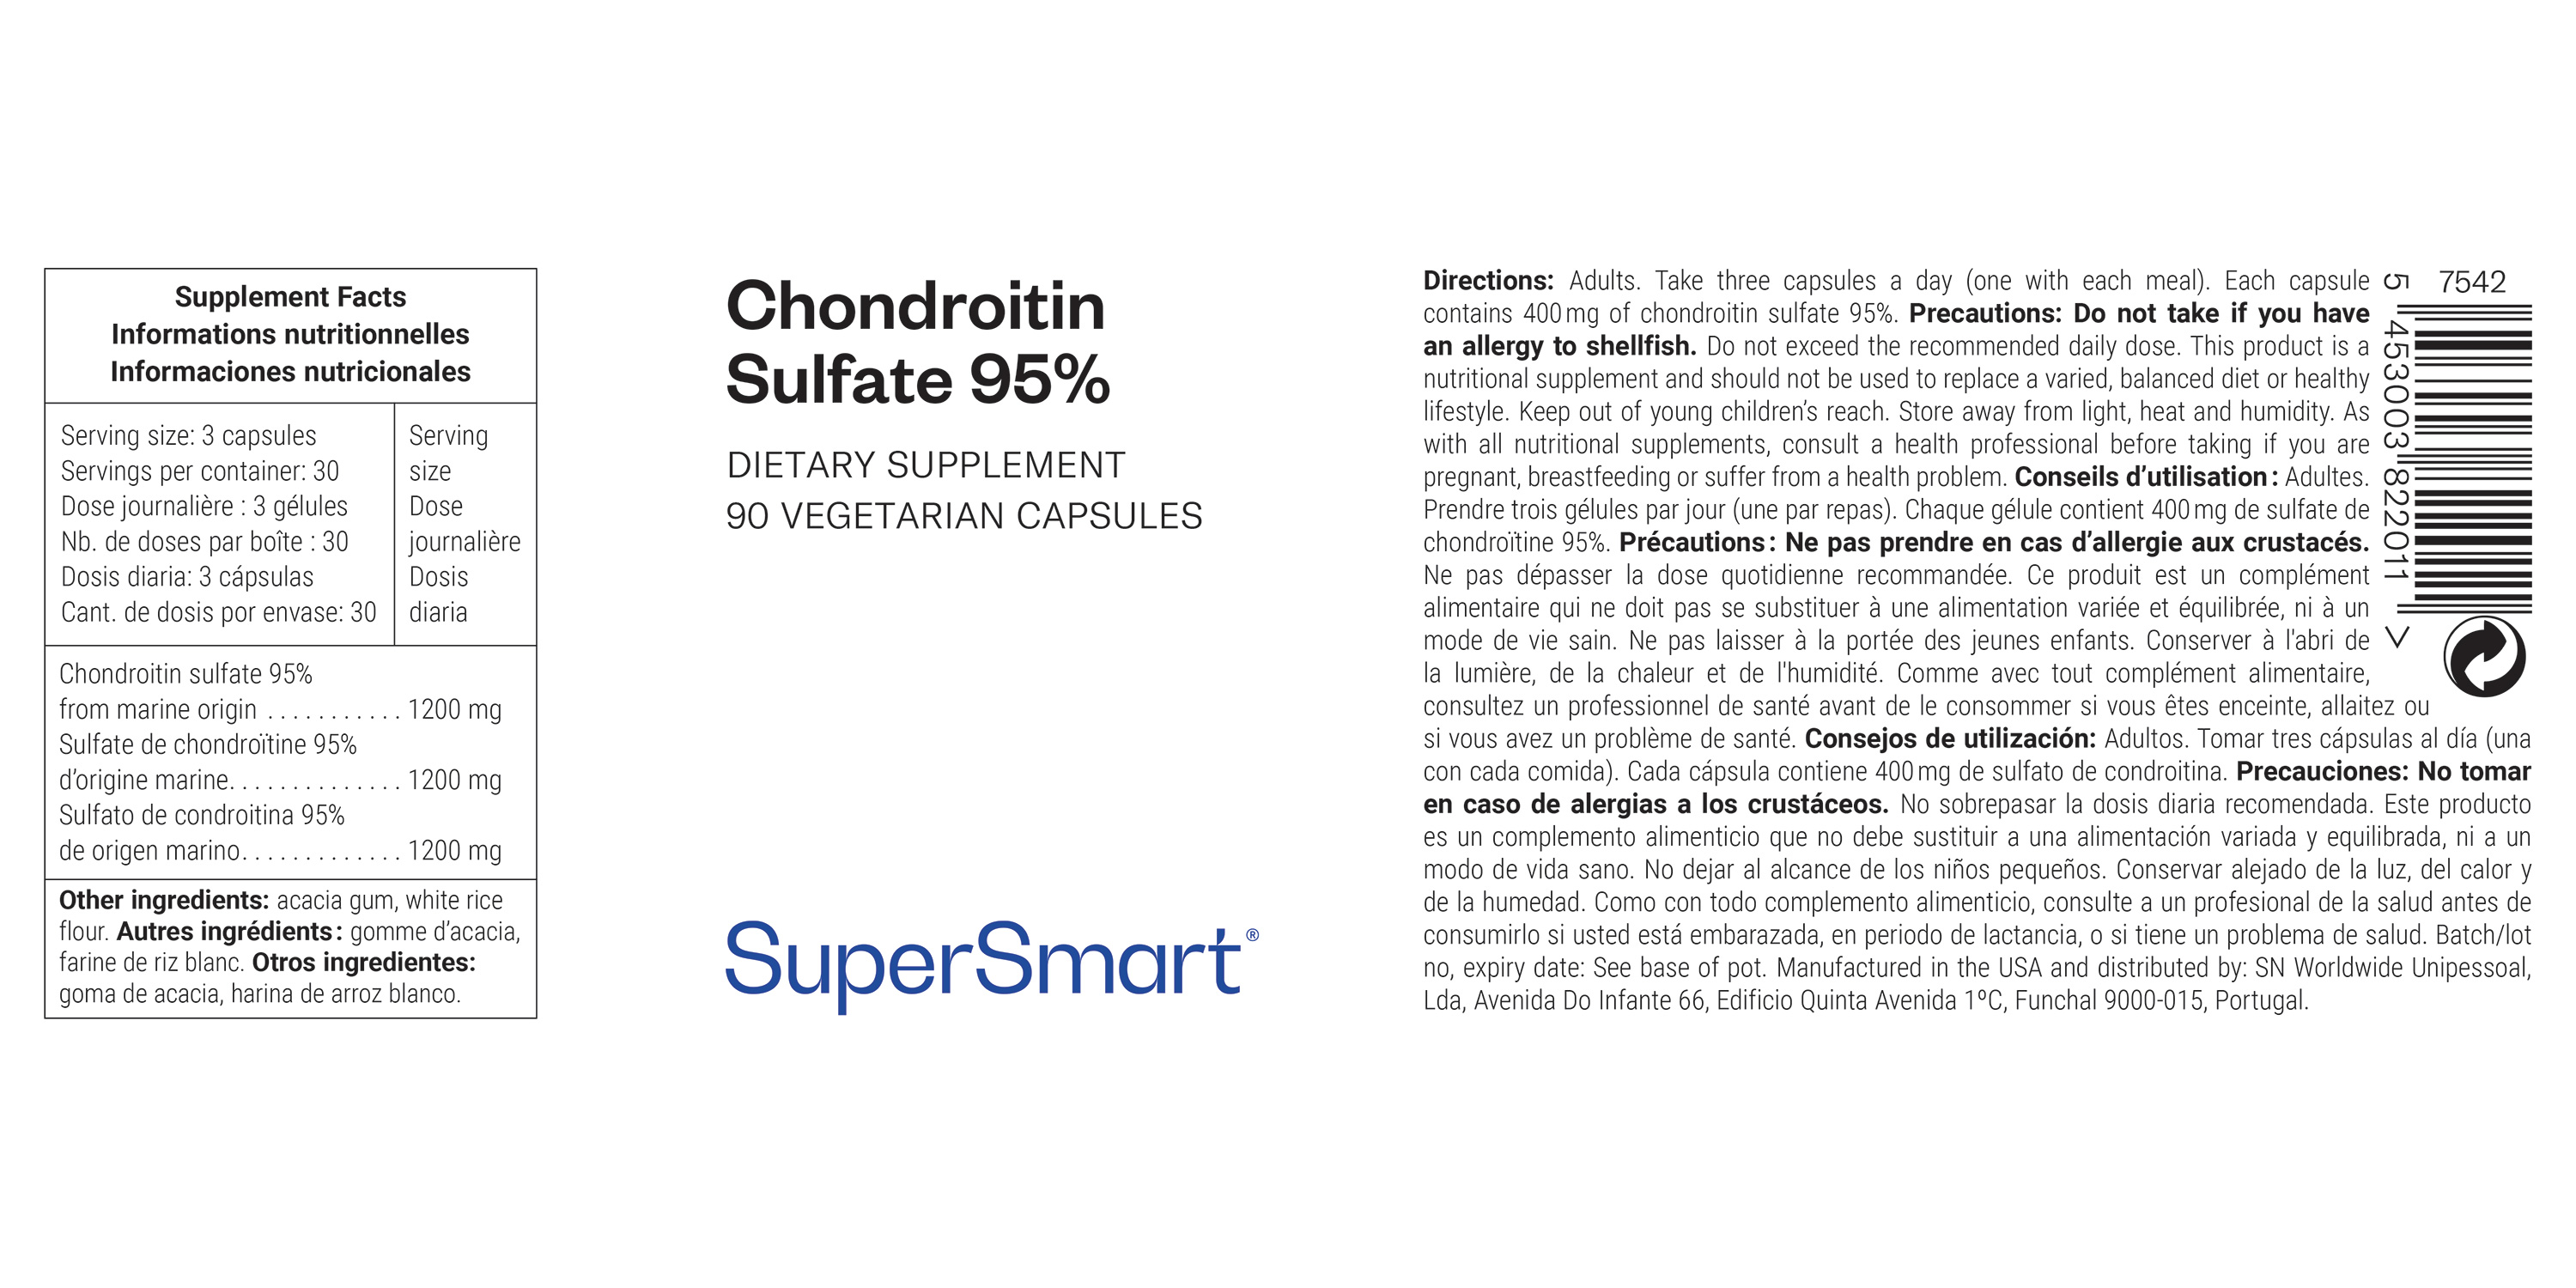 Chondroitin Sulfate 95%, dietary supplement of marine origin